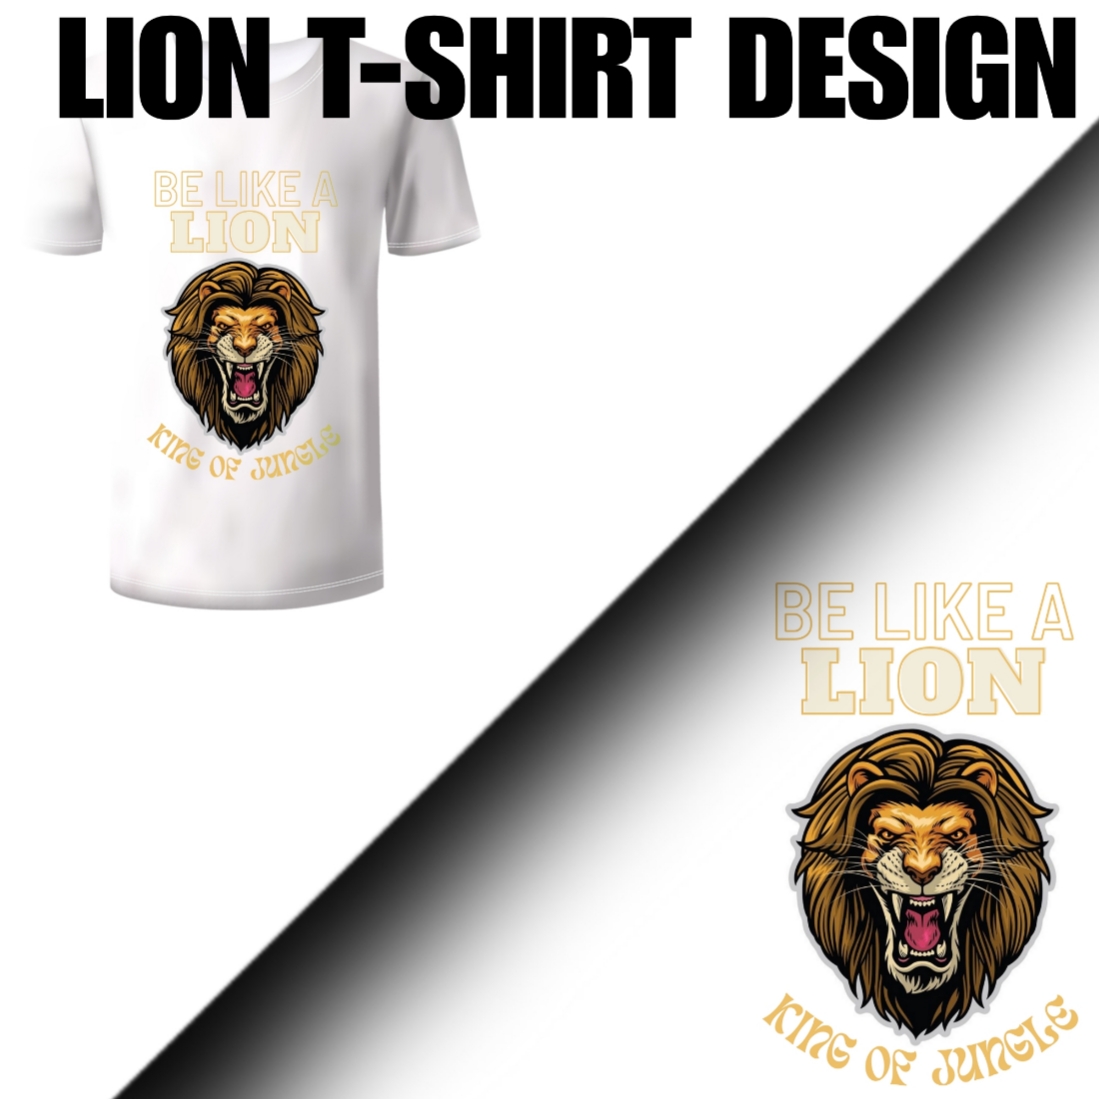 LION T-SHIRT DESIGN preview image.